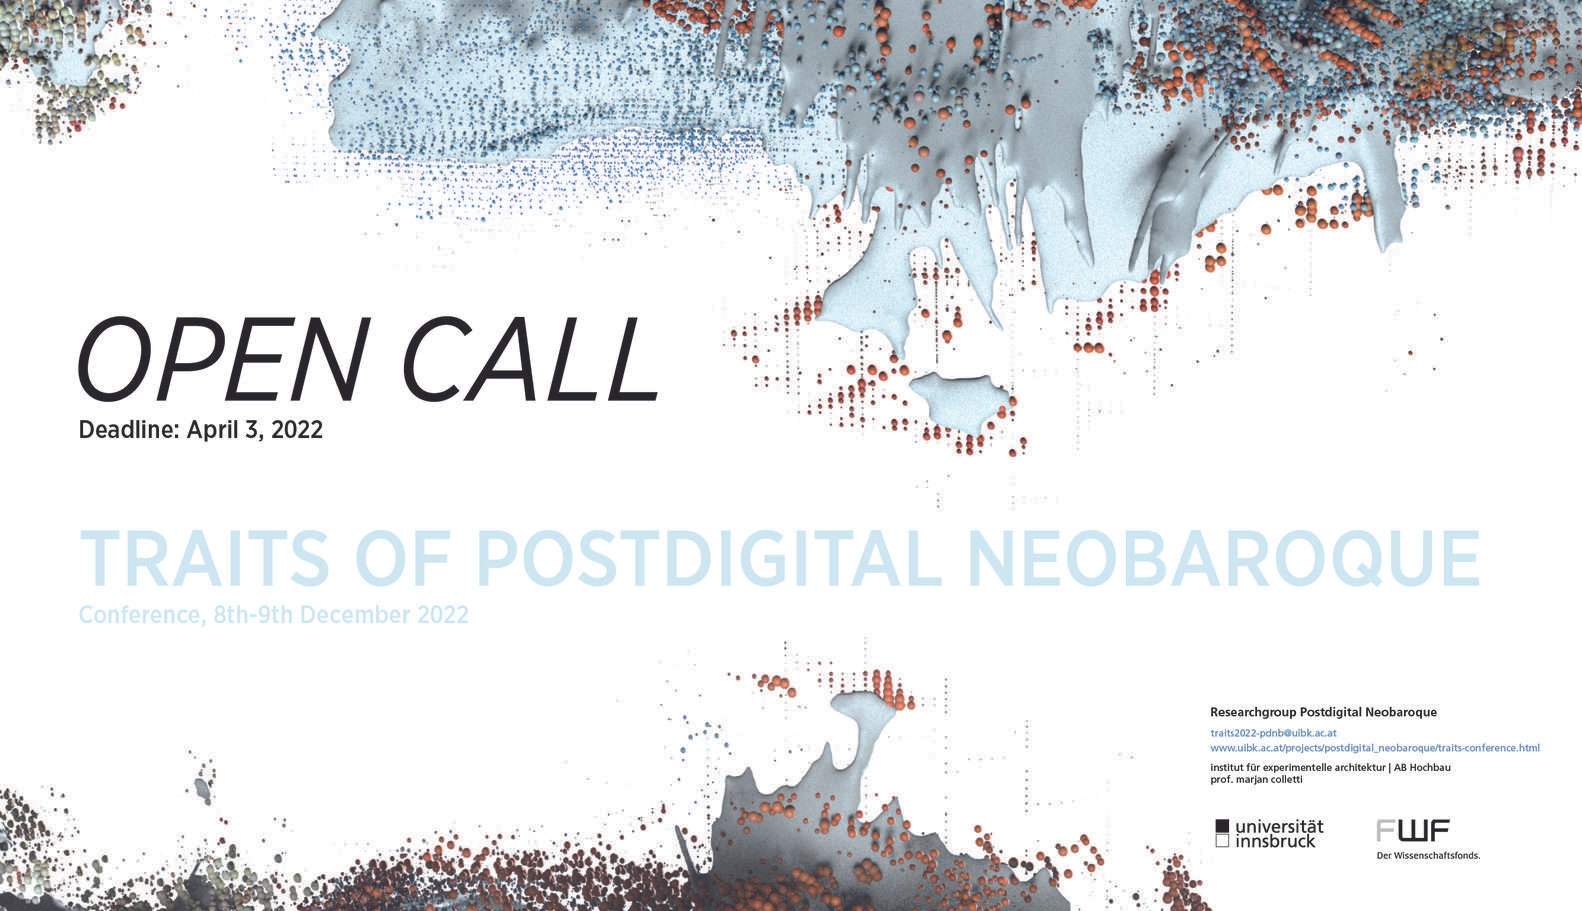 دعوة مفتوحة: سمات مؤتمر Neobaroque Postdigital 2022